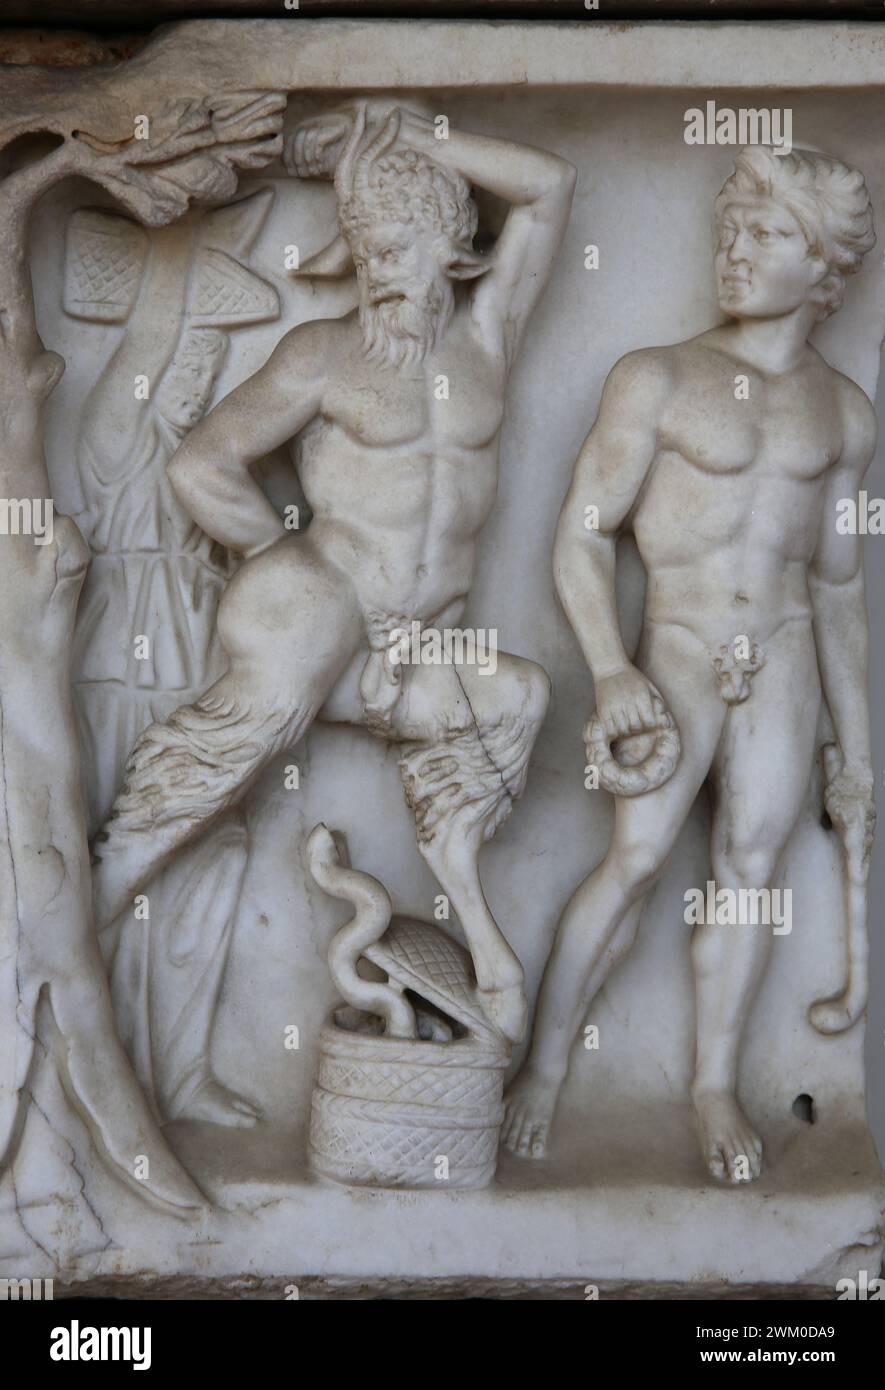 Römischer Sarkophag. Dionysische zeremonielle Prozession. Satyr. Mable. 160-180 N. CHR. Grab an der Via Aurelia Antica, Rom. Nationales Römisches Museum (Diokle-Bäder Stockfoto